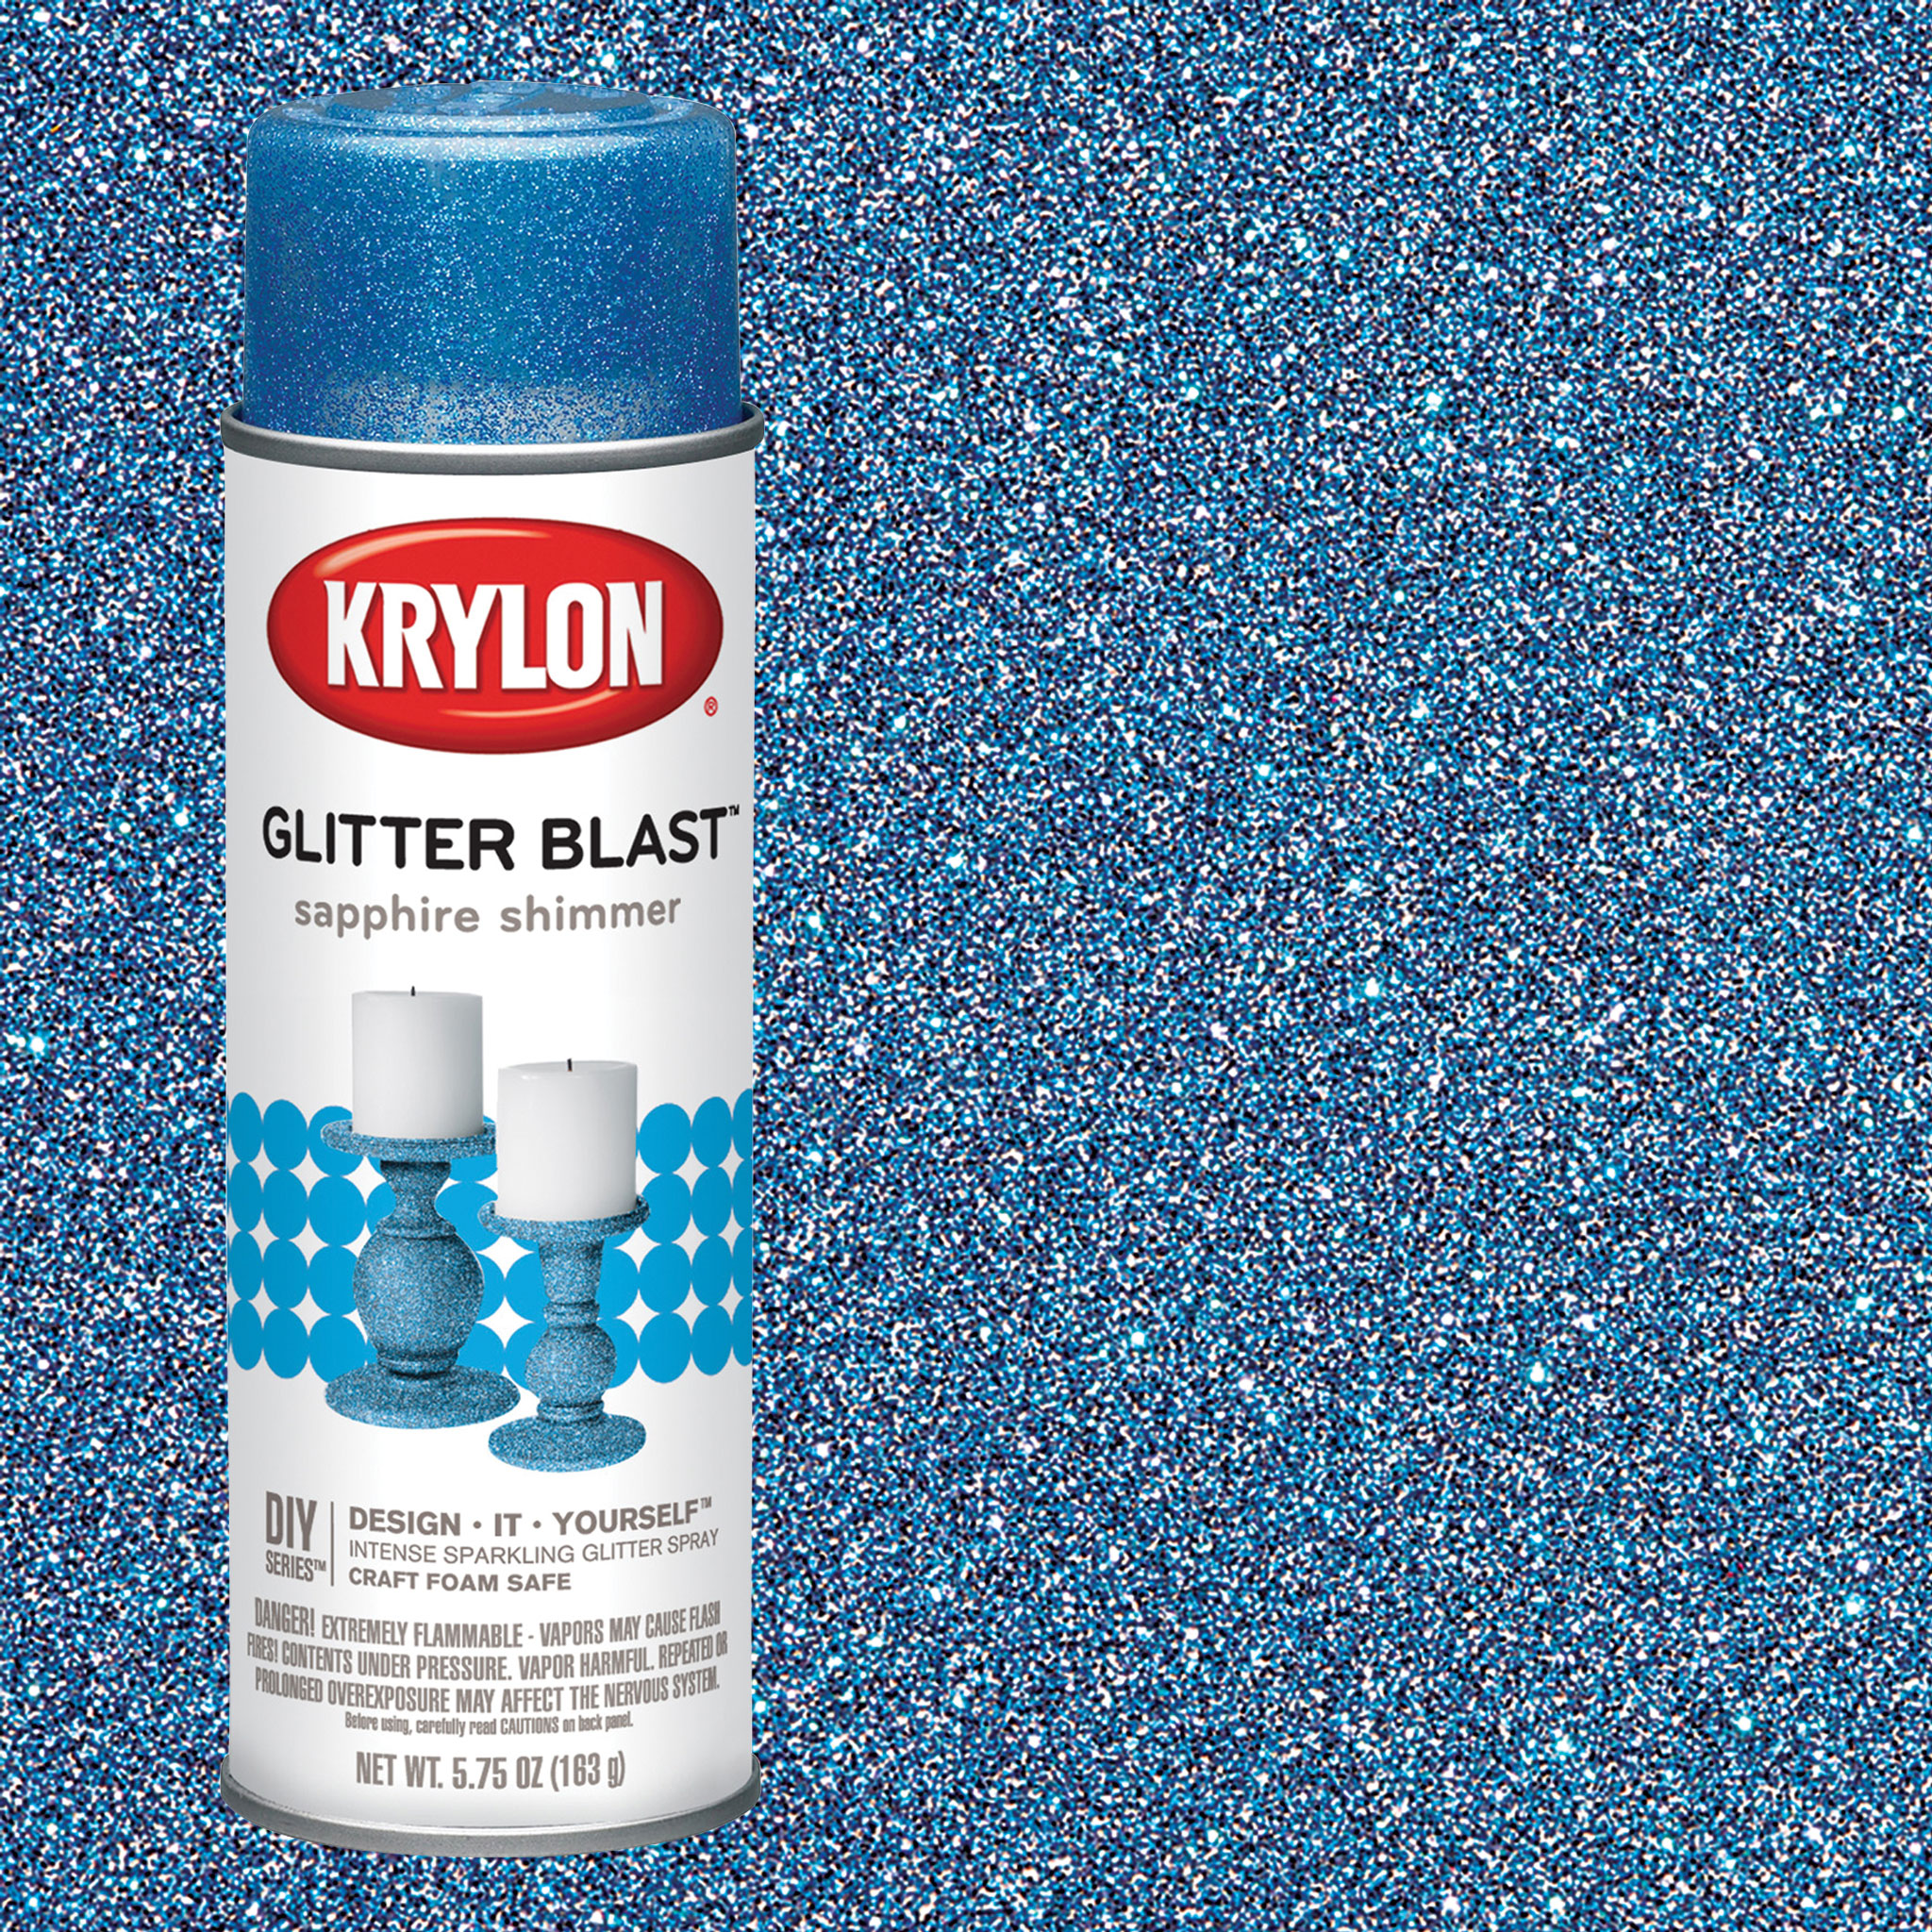 Krylon Glitter Blast Gloss Clear Glitter Spray Paint (NET WT. 6-oz ) at